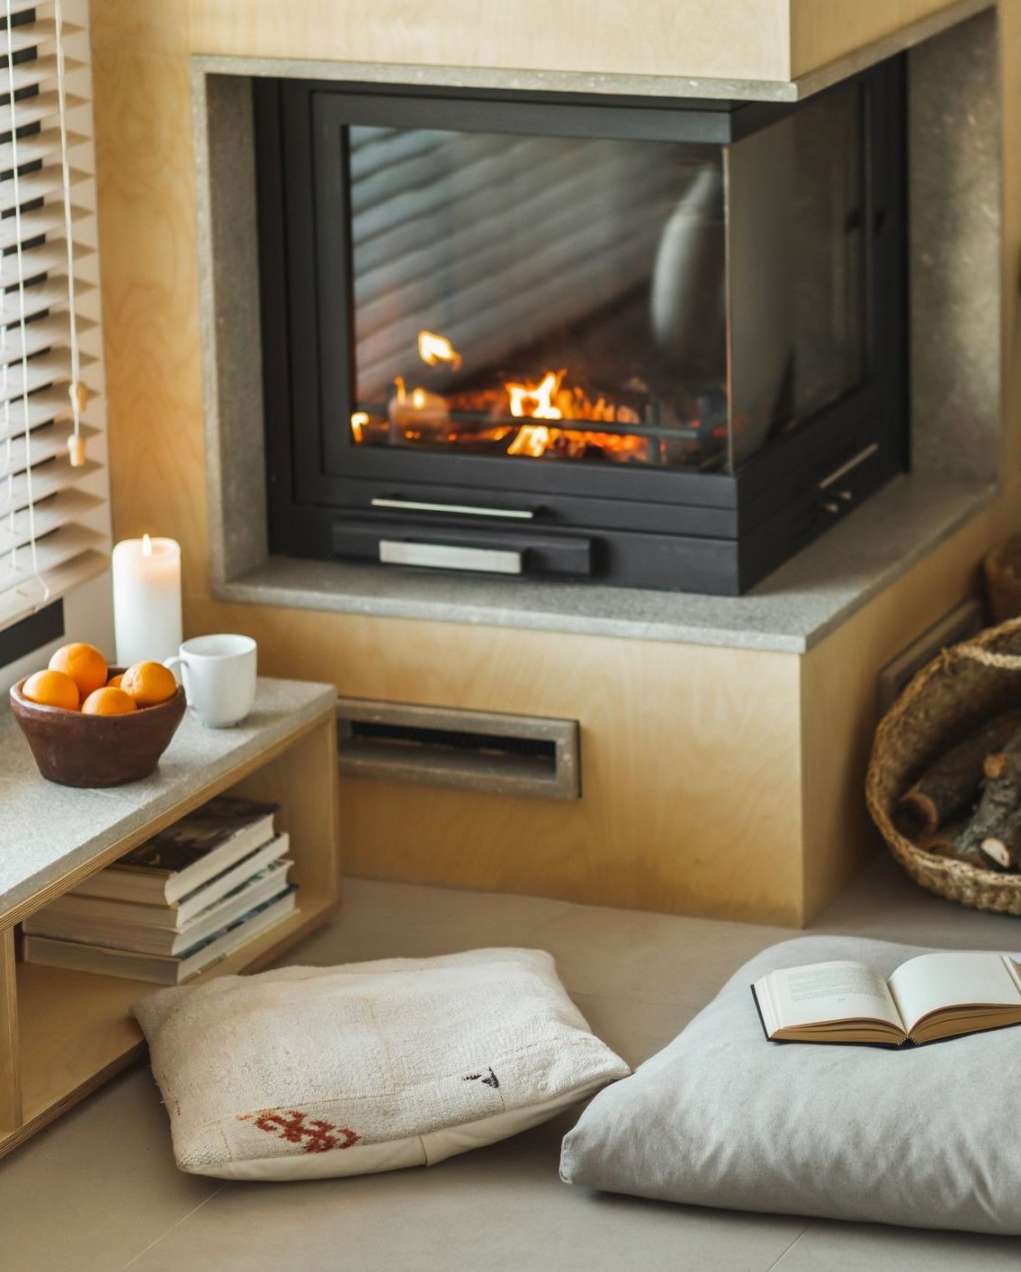 Best Fireplace Décor Ideas - Mantel Décor